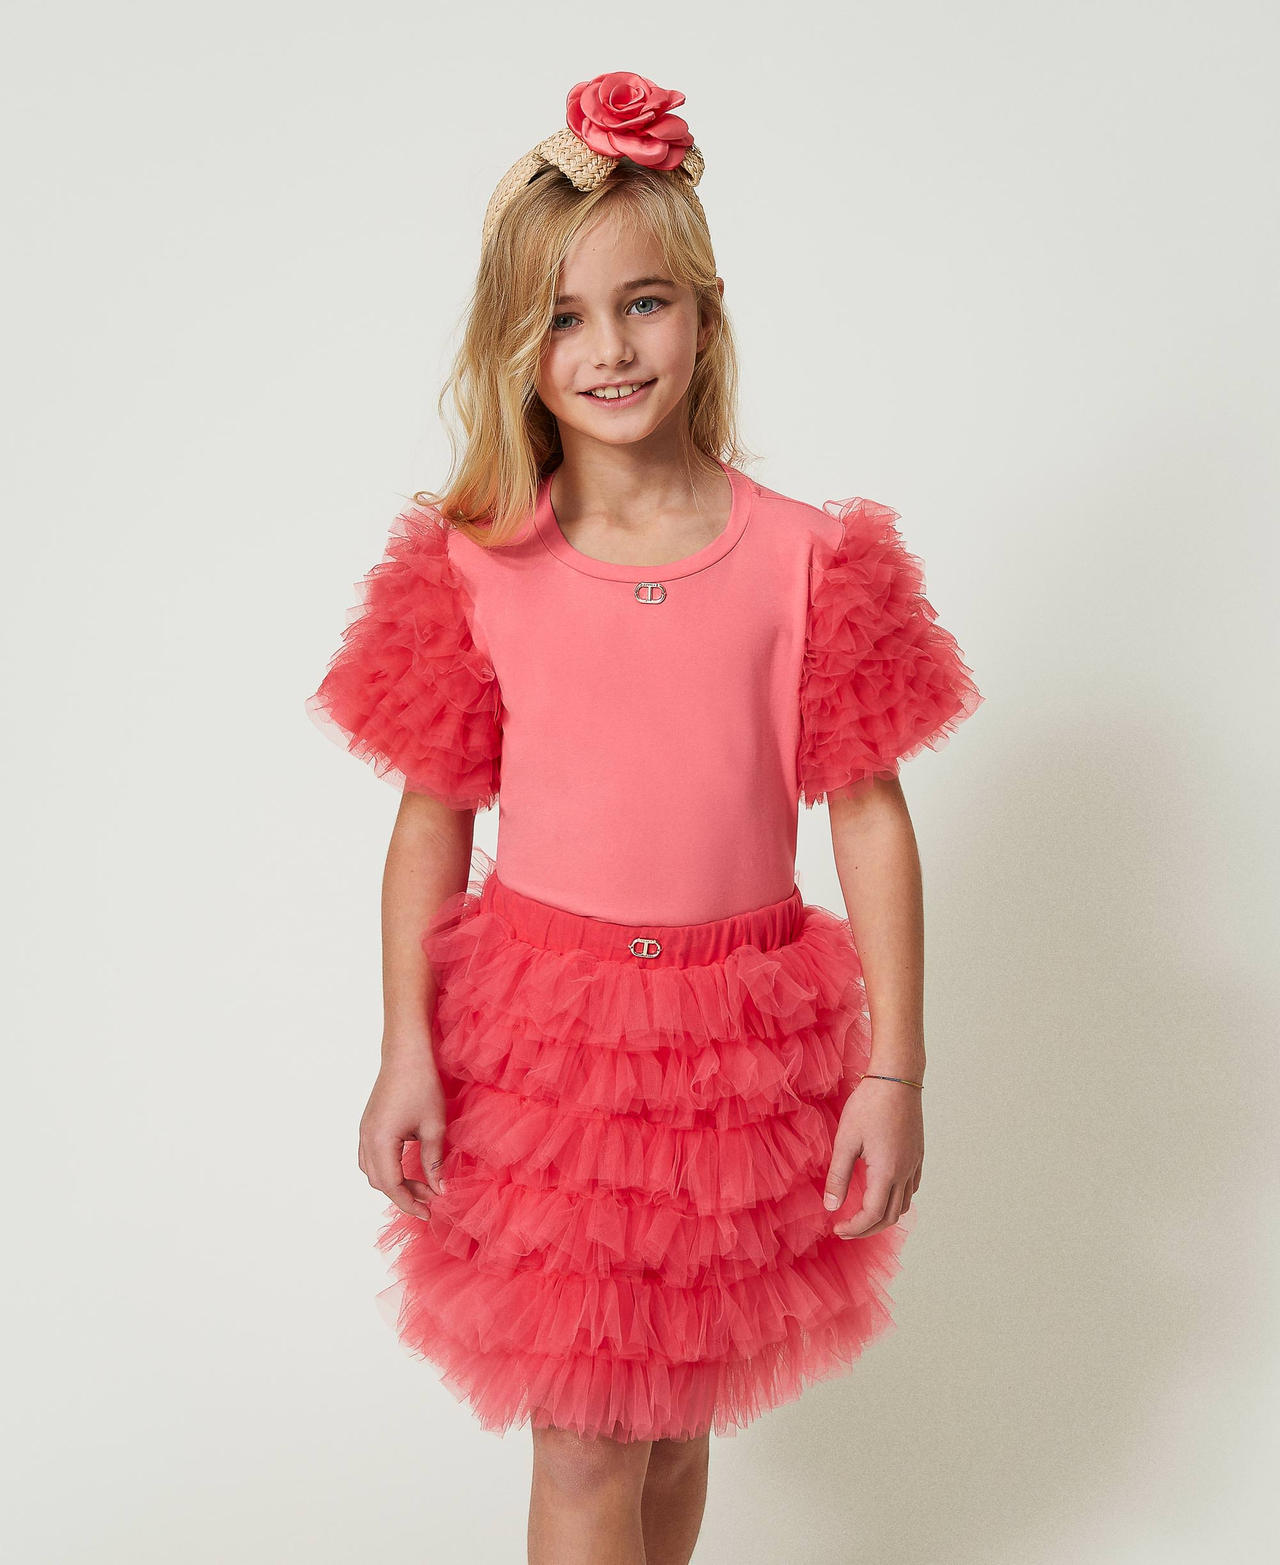 Короткая юбка из тюля с оборками Розовый "Розовая Камелия" Девочка 241GJ2151-02